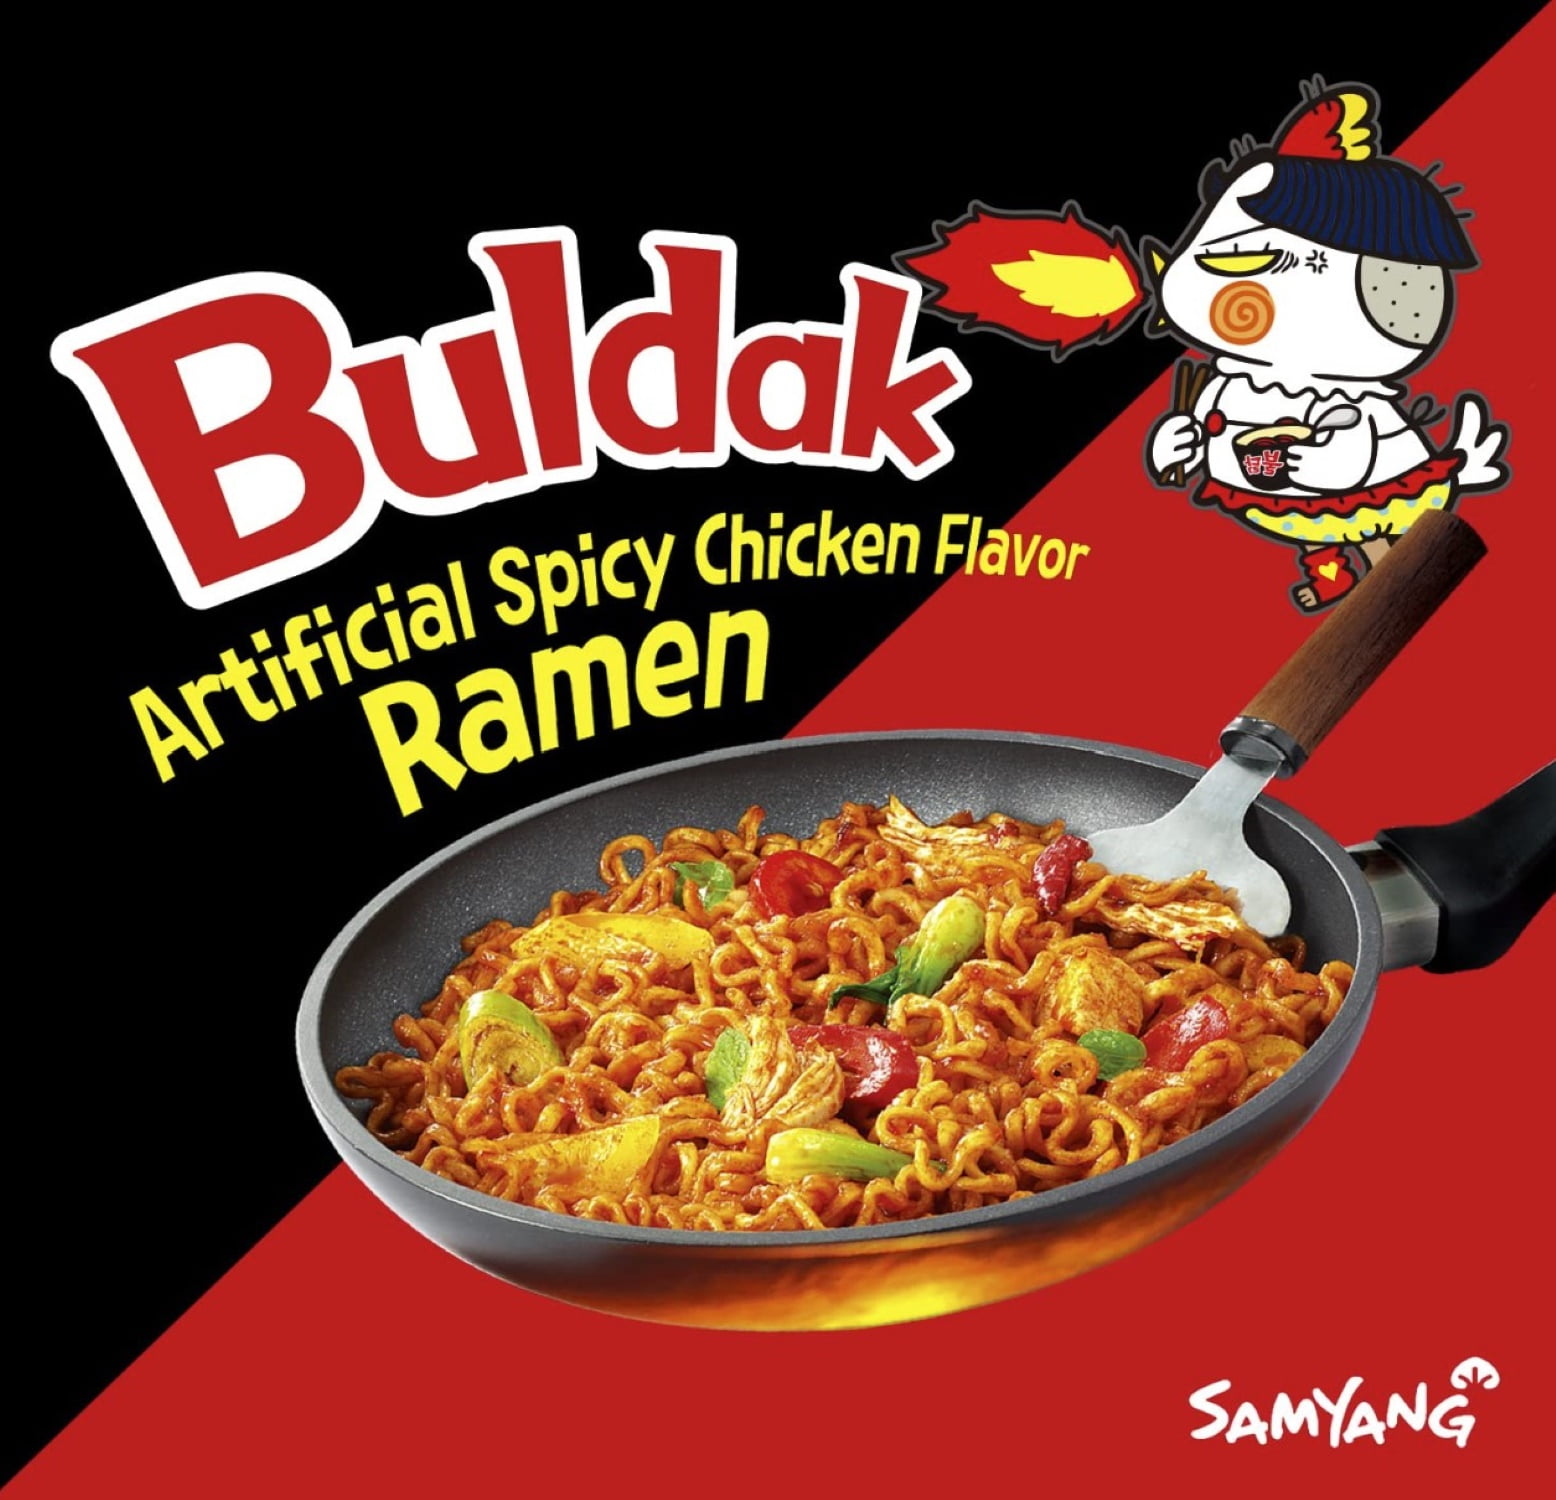 Buldak Hot Chicken Ramen, Samyang 